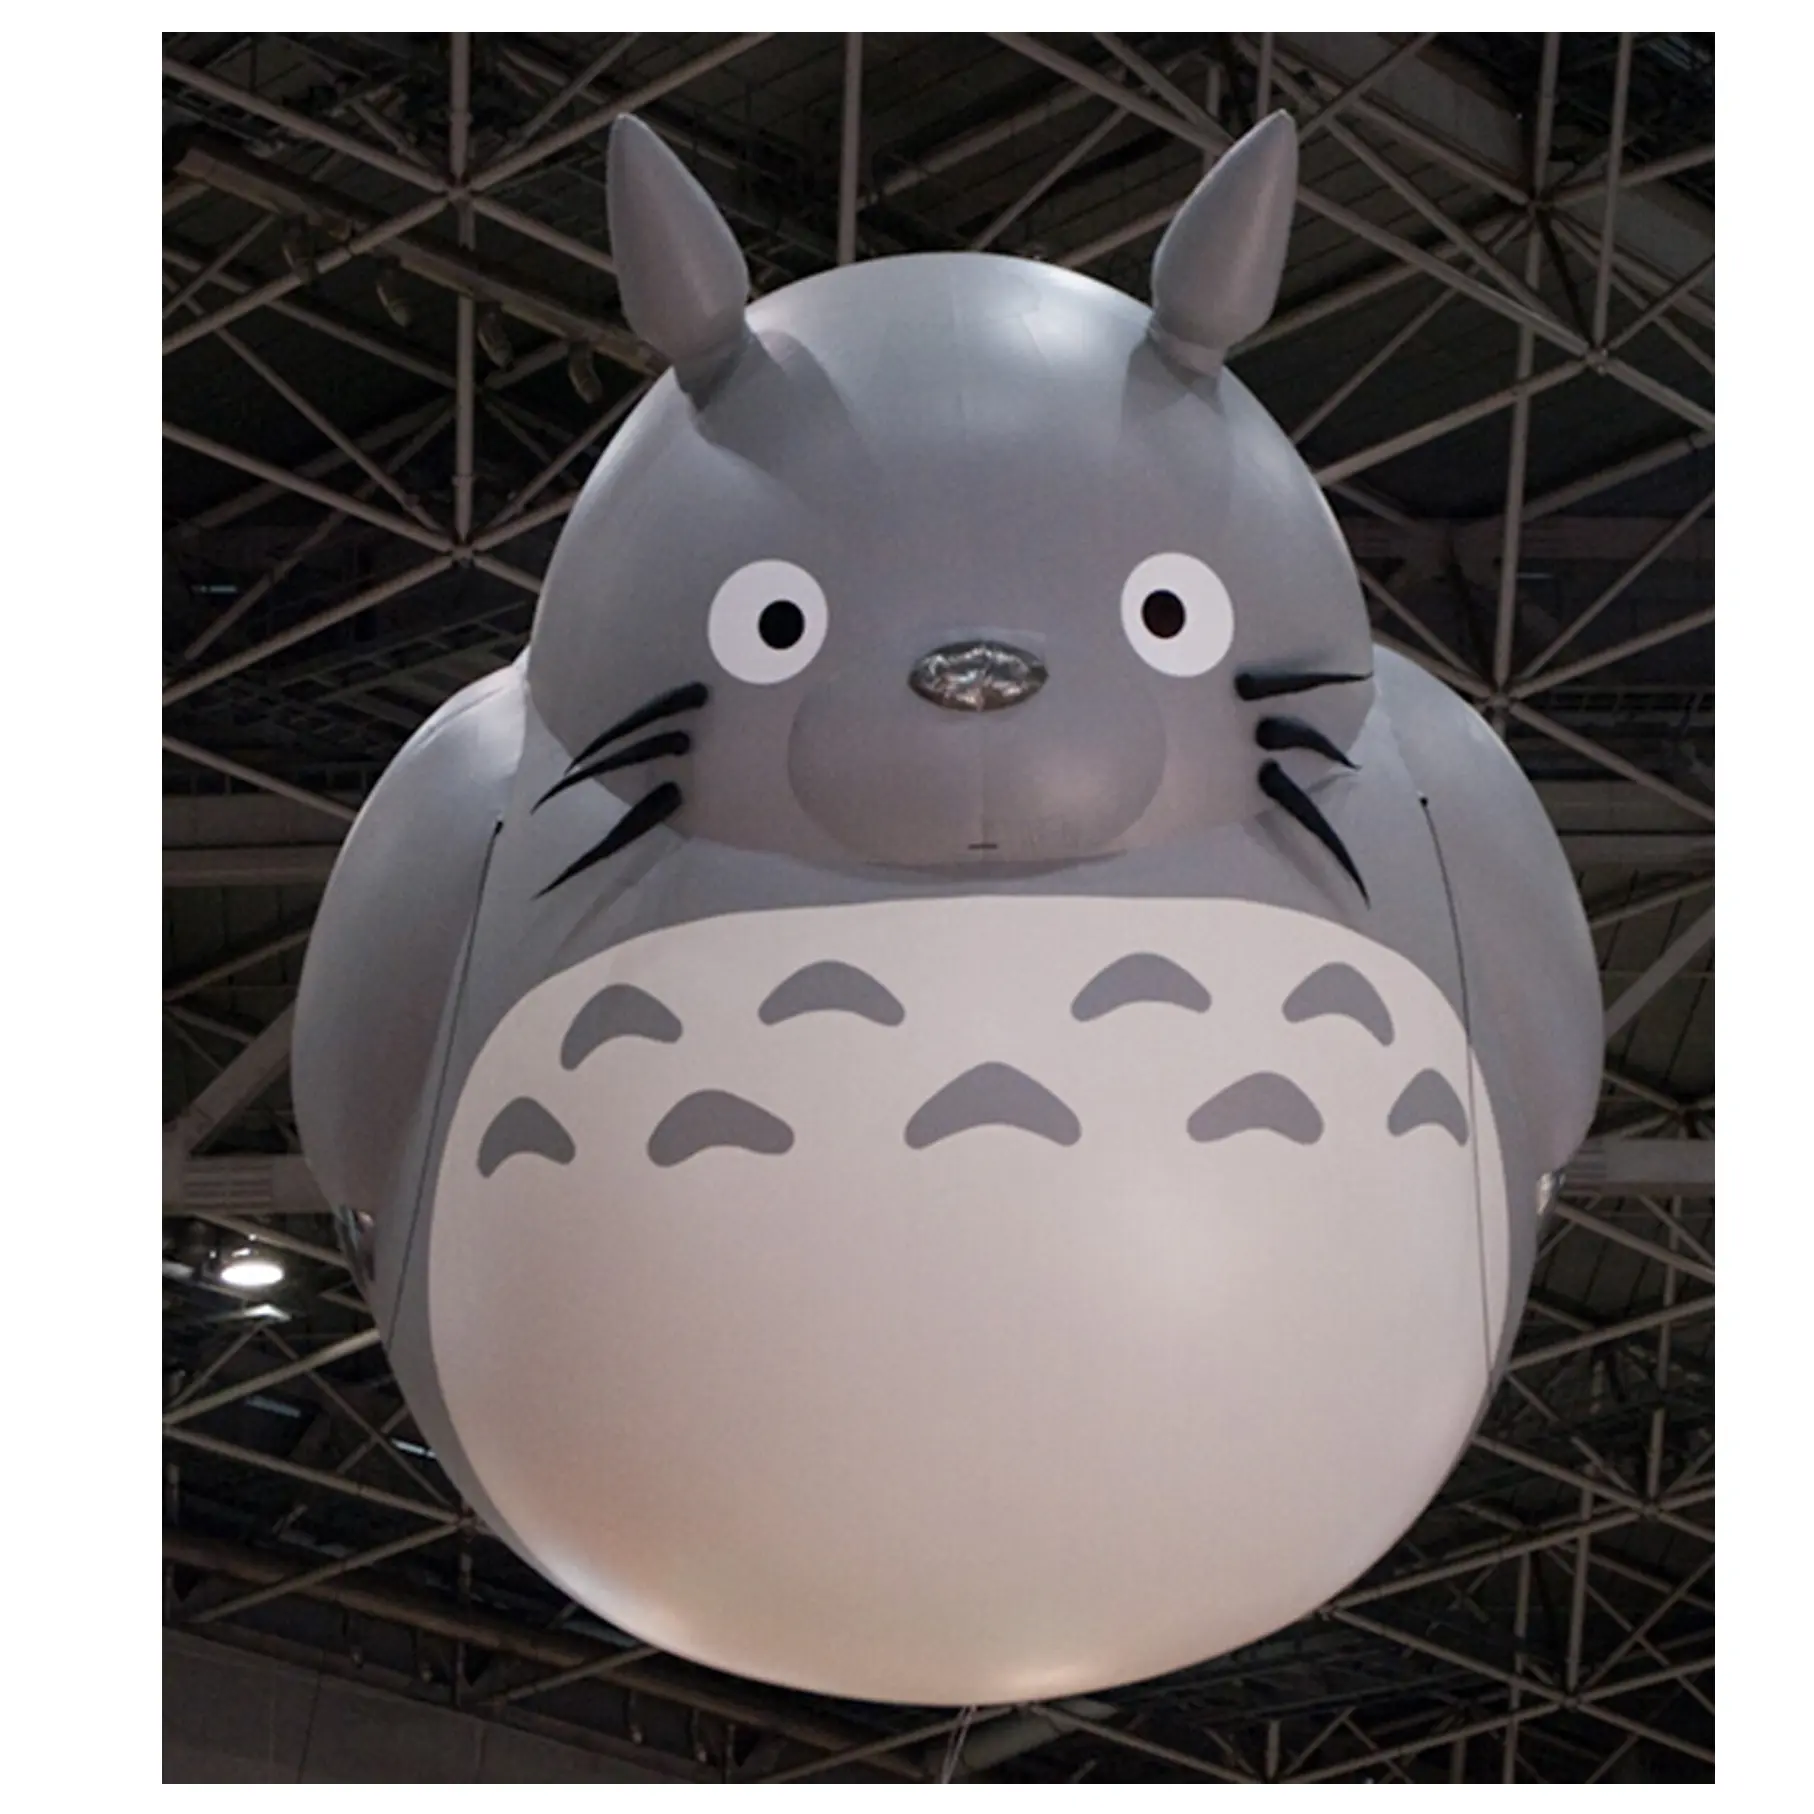 Japão popular inflável voando modelos Totoro/Totoro inflável balão de hélio para venda